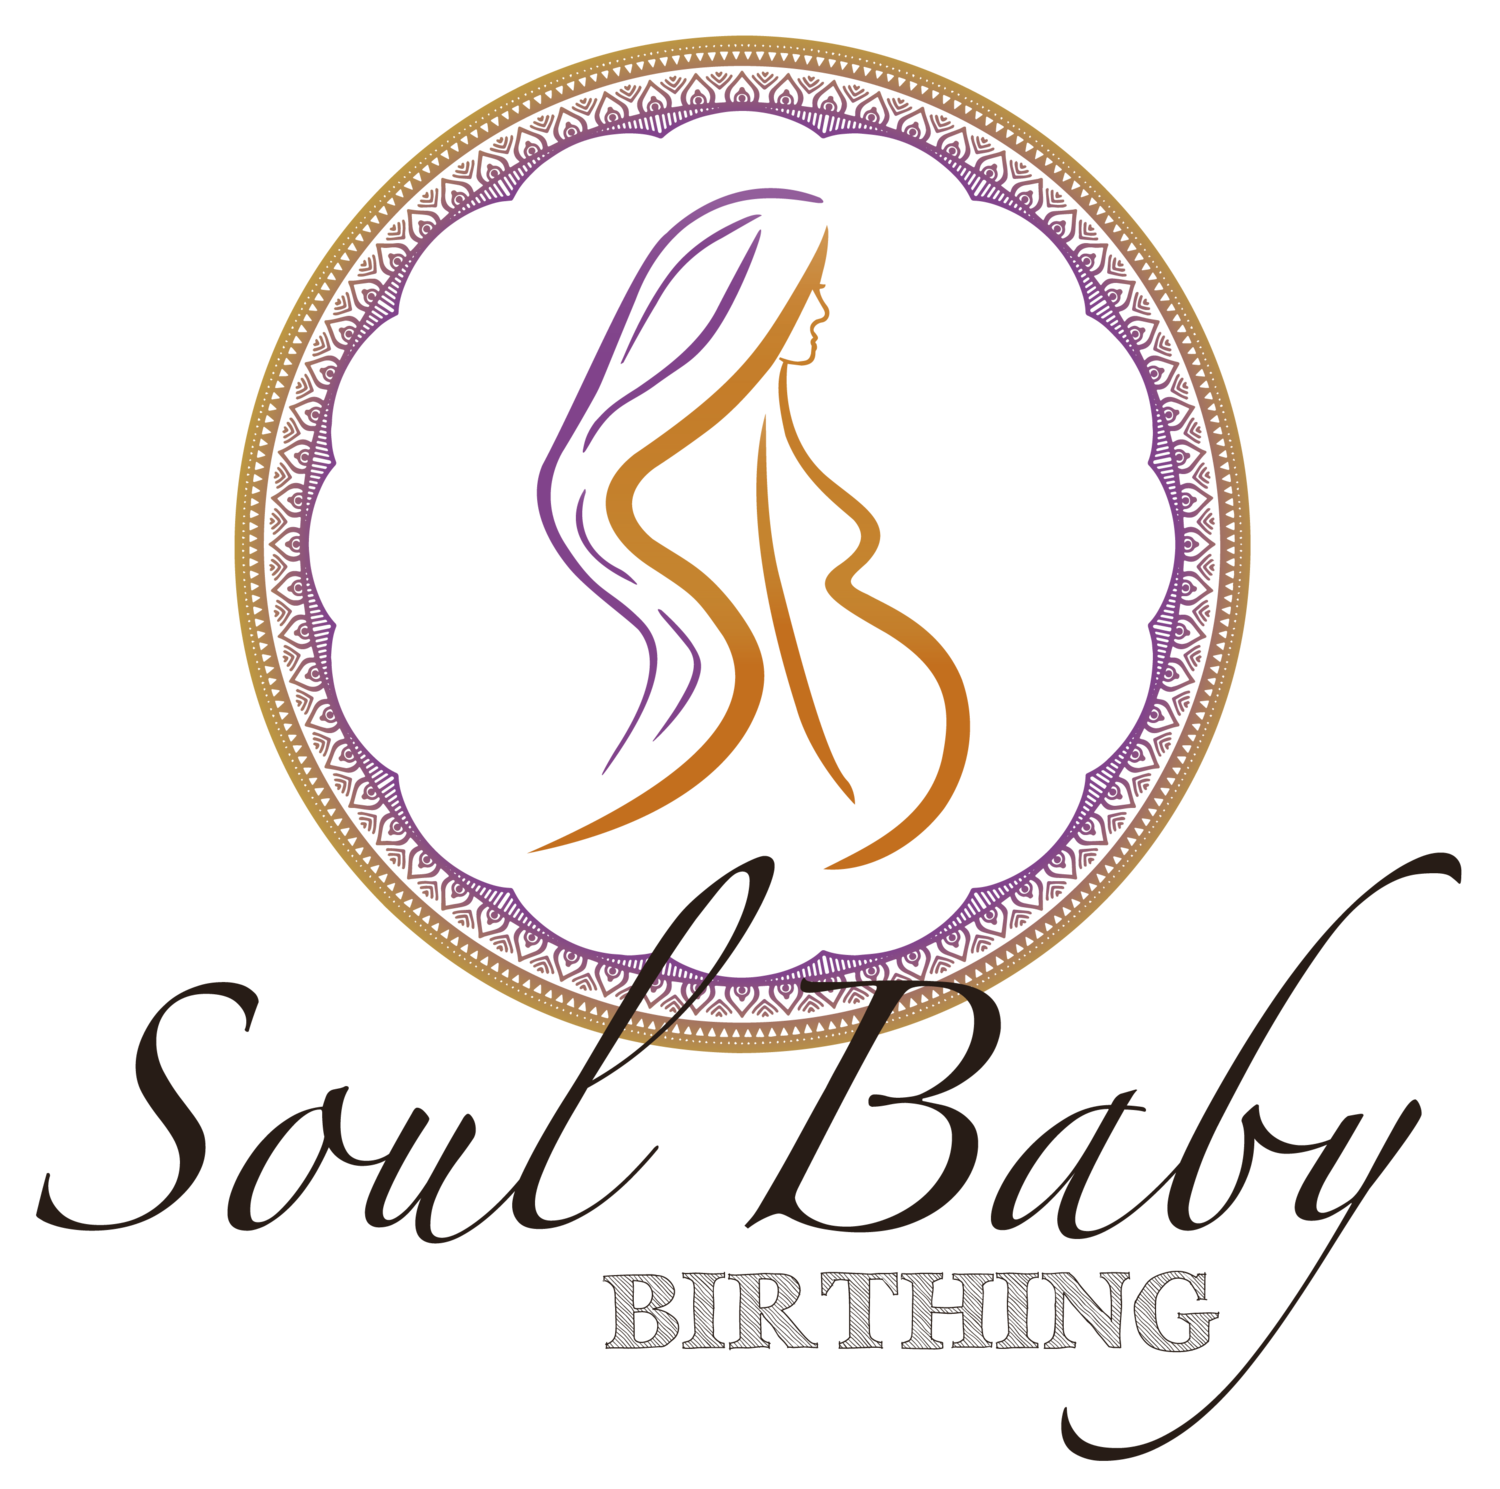 Soul Baby Birthing